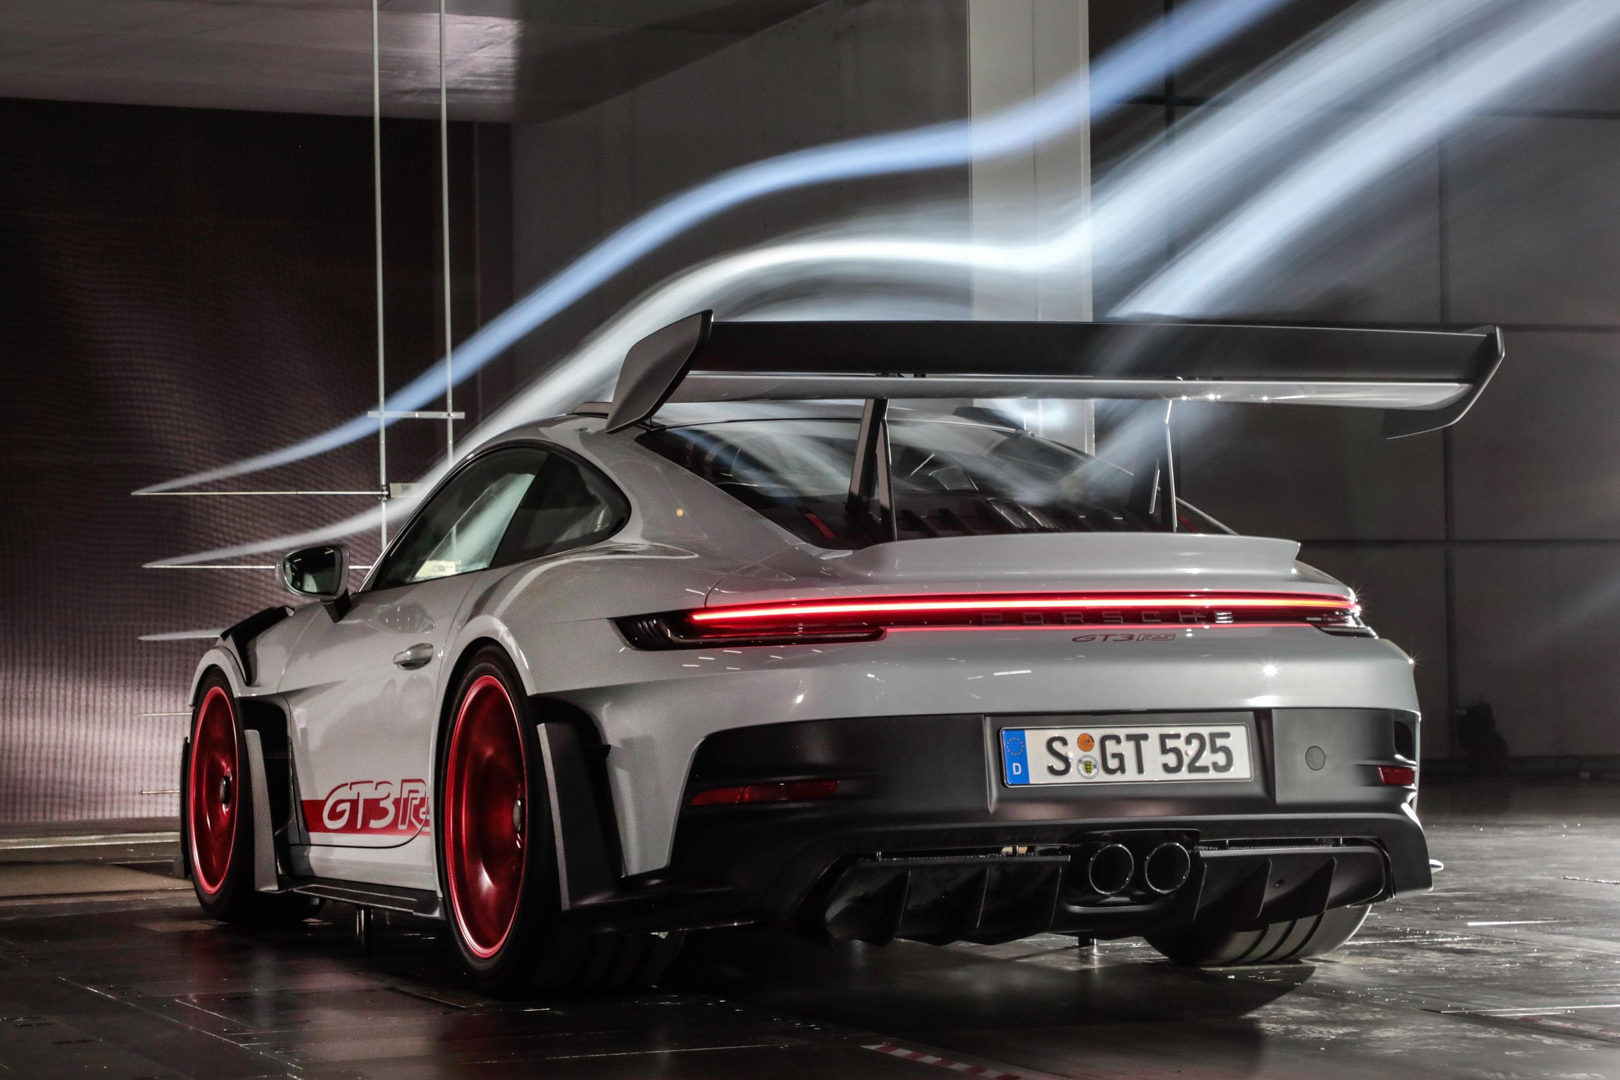 Chi tiết Porsche 911 GT3 RS thế hệ mới - ảnh 11